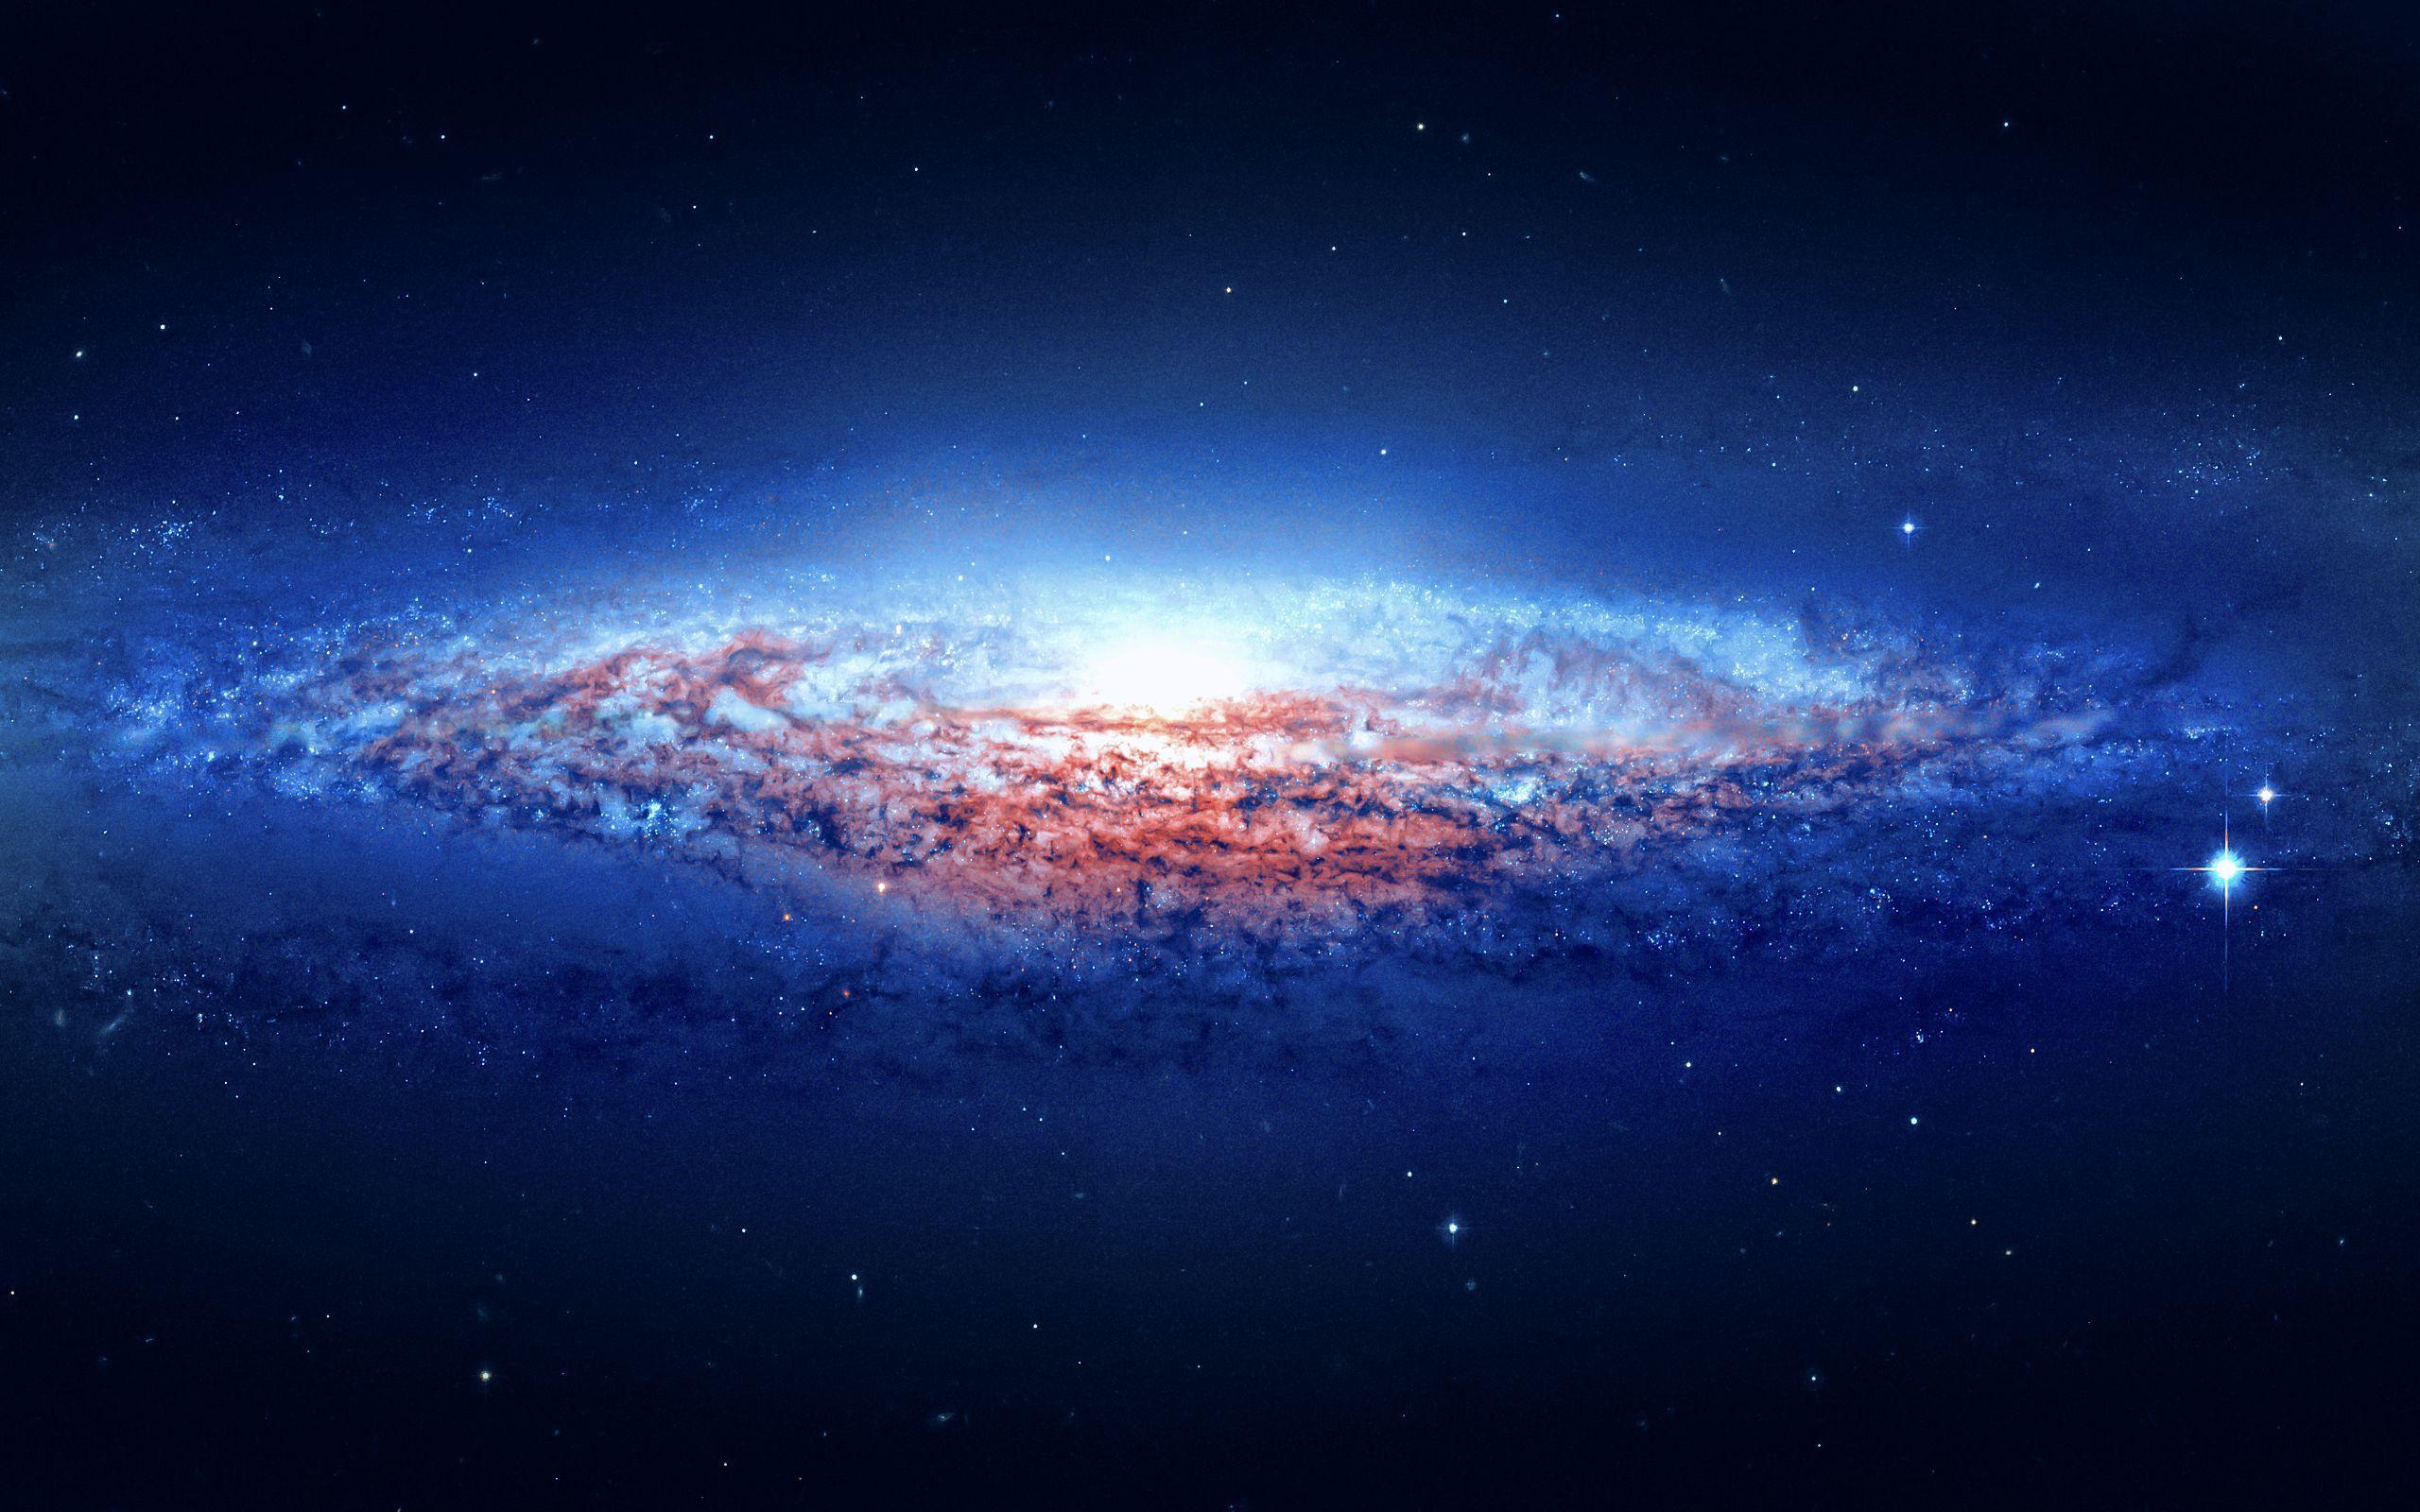 Galaxy, Milky Way, Universe / Wallpaper as